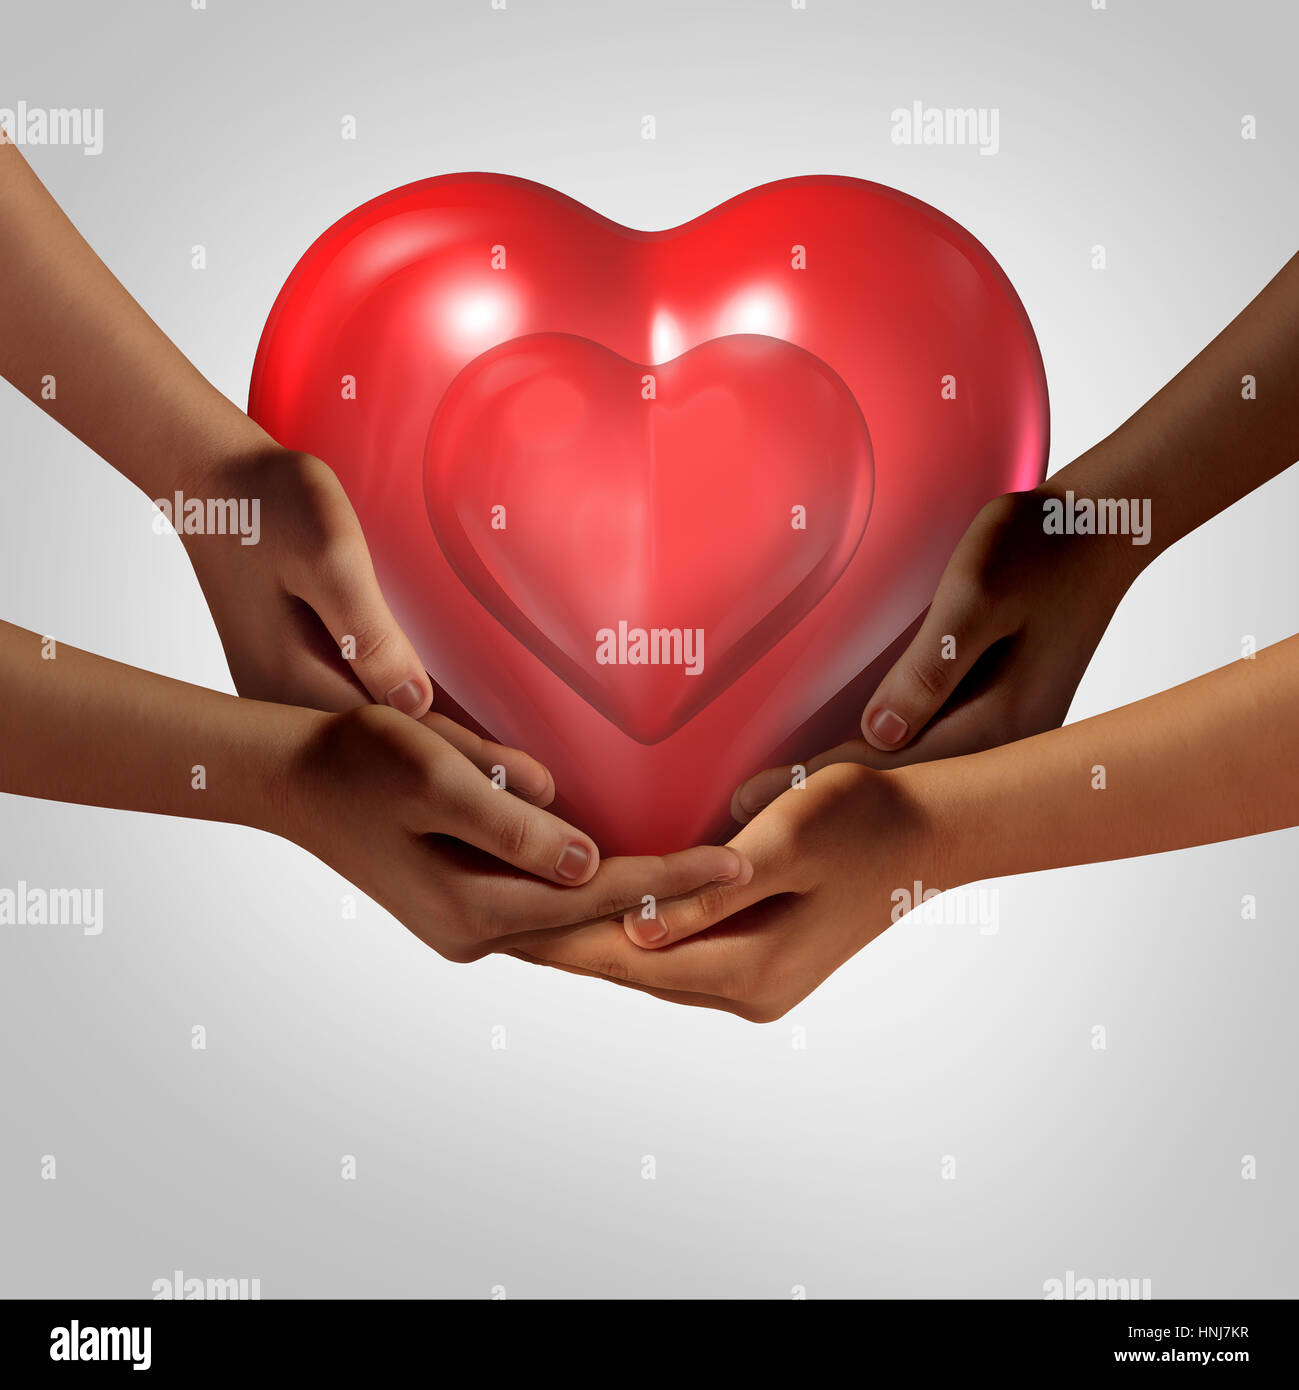 La società globale di amore e salute di comunità come simbolo di diverse mani tenendo un cuore rosso come un simbolo per la cura nella società. Foto Stock